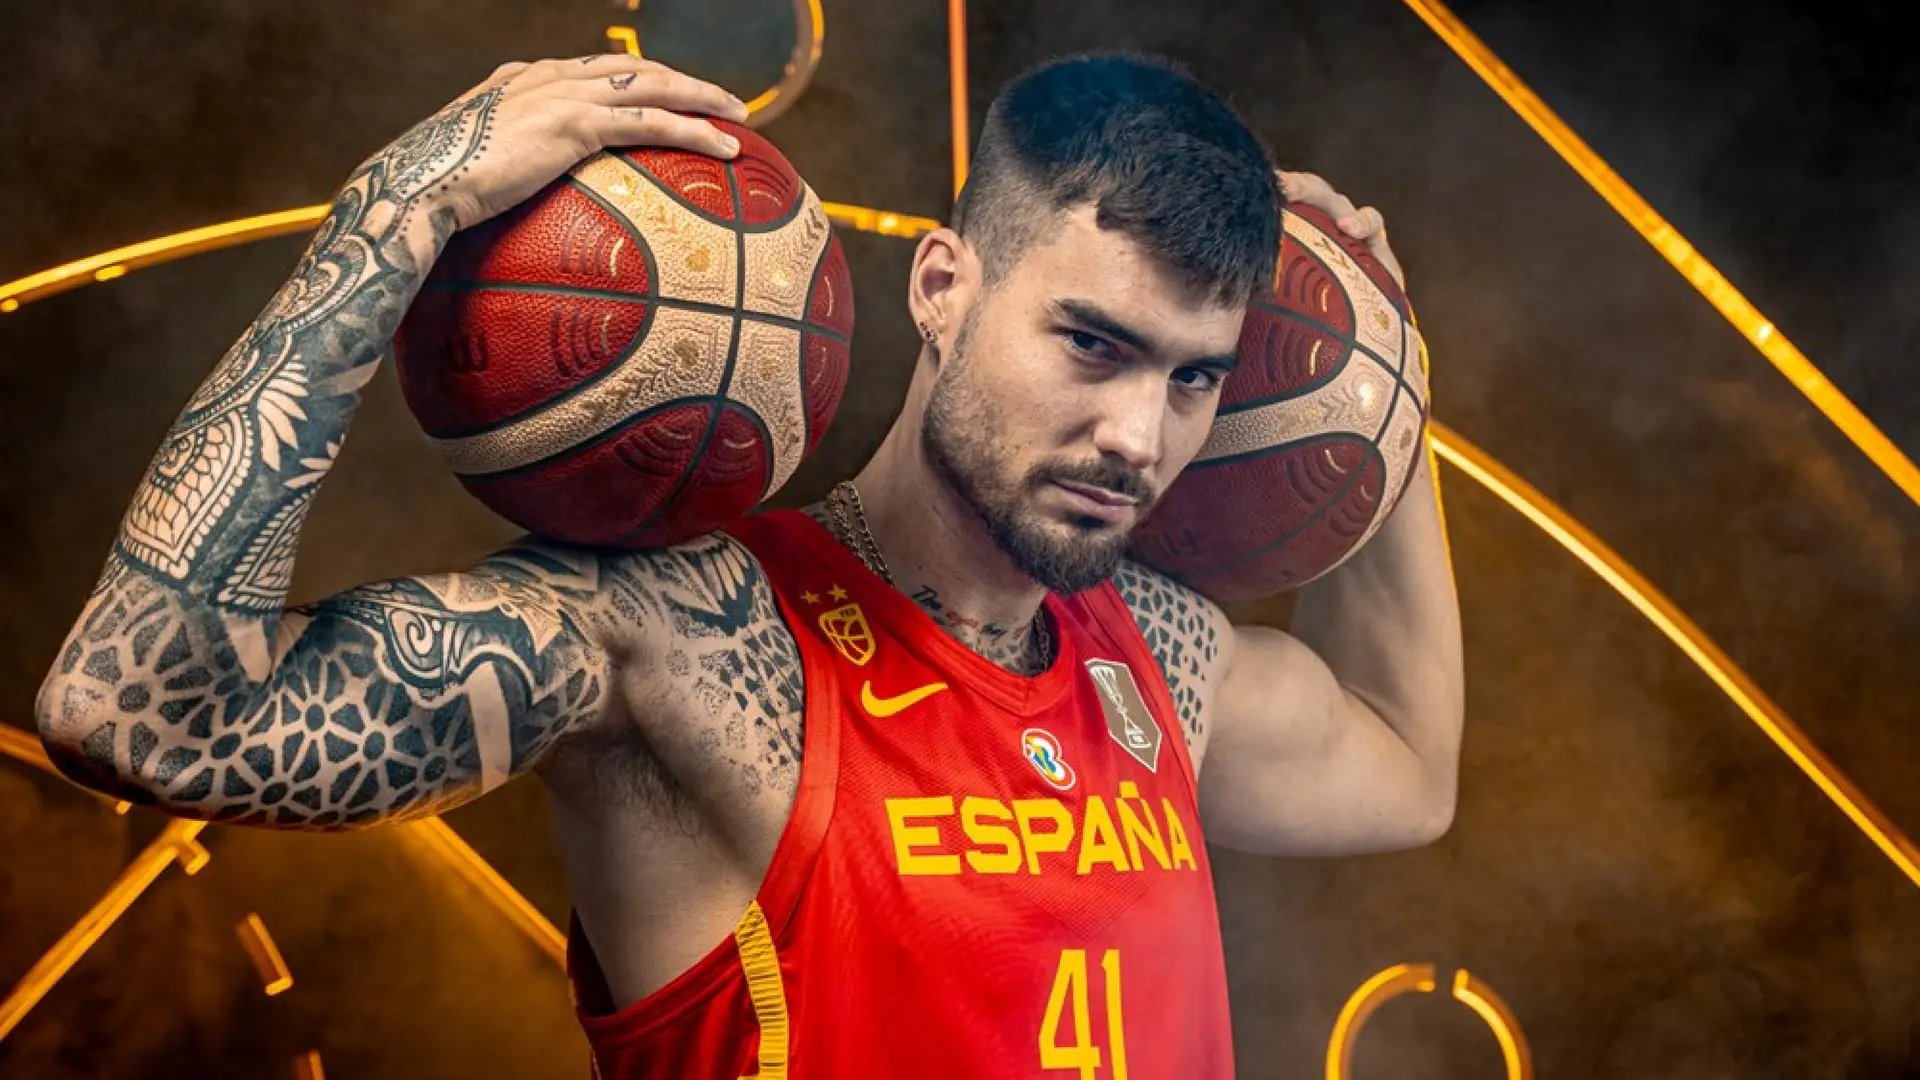 Juancho Hernangómez, uno de los grandes jugadores de la selección española, que forma parte del grupo G en el Mundial de Baloncesto, Fotografía: fiba.basketball